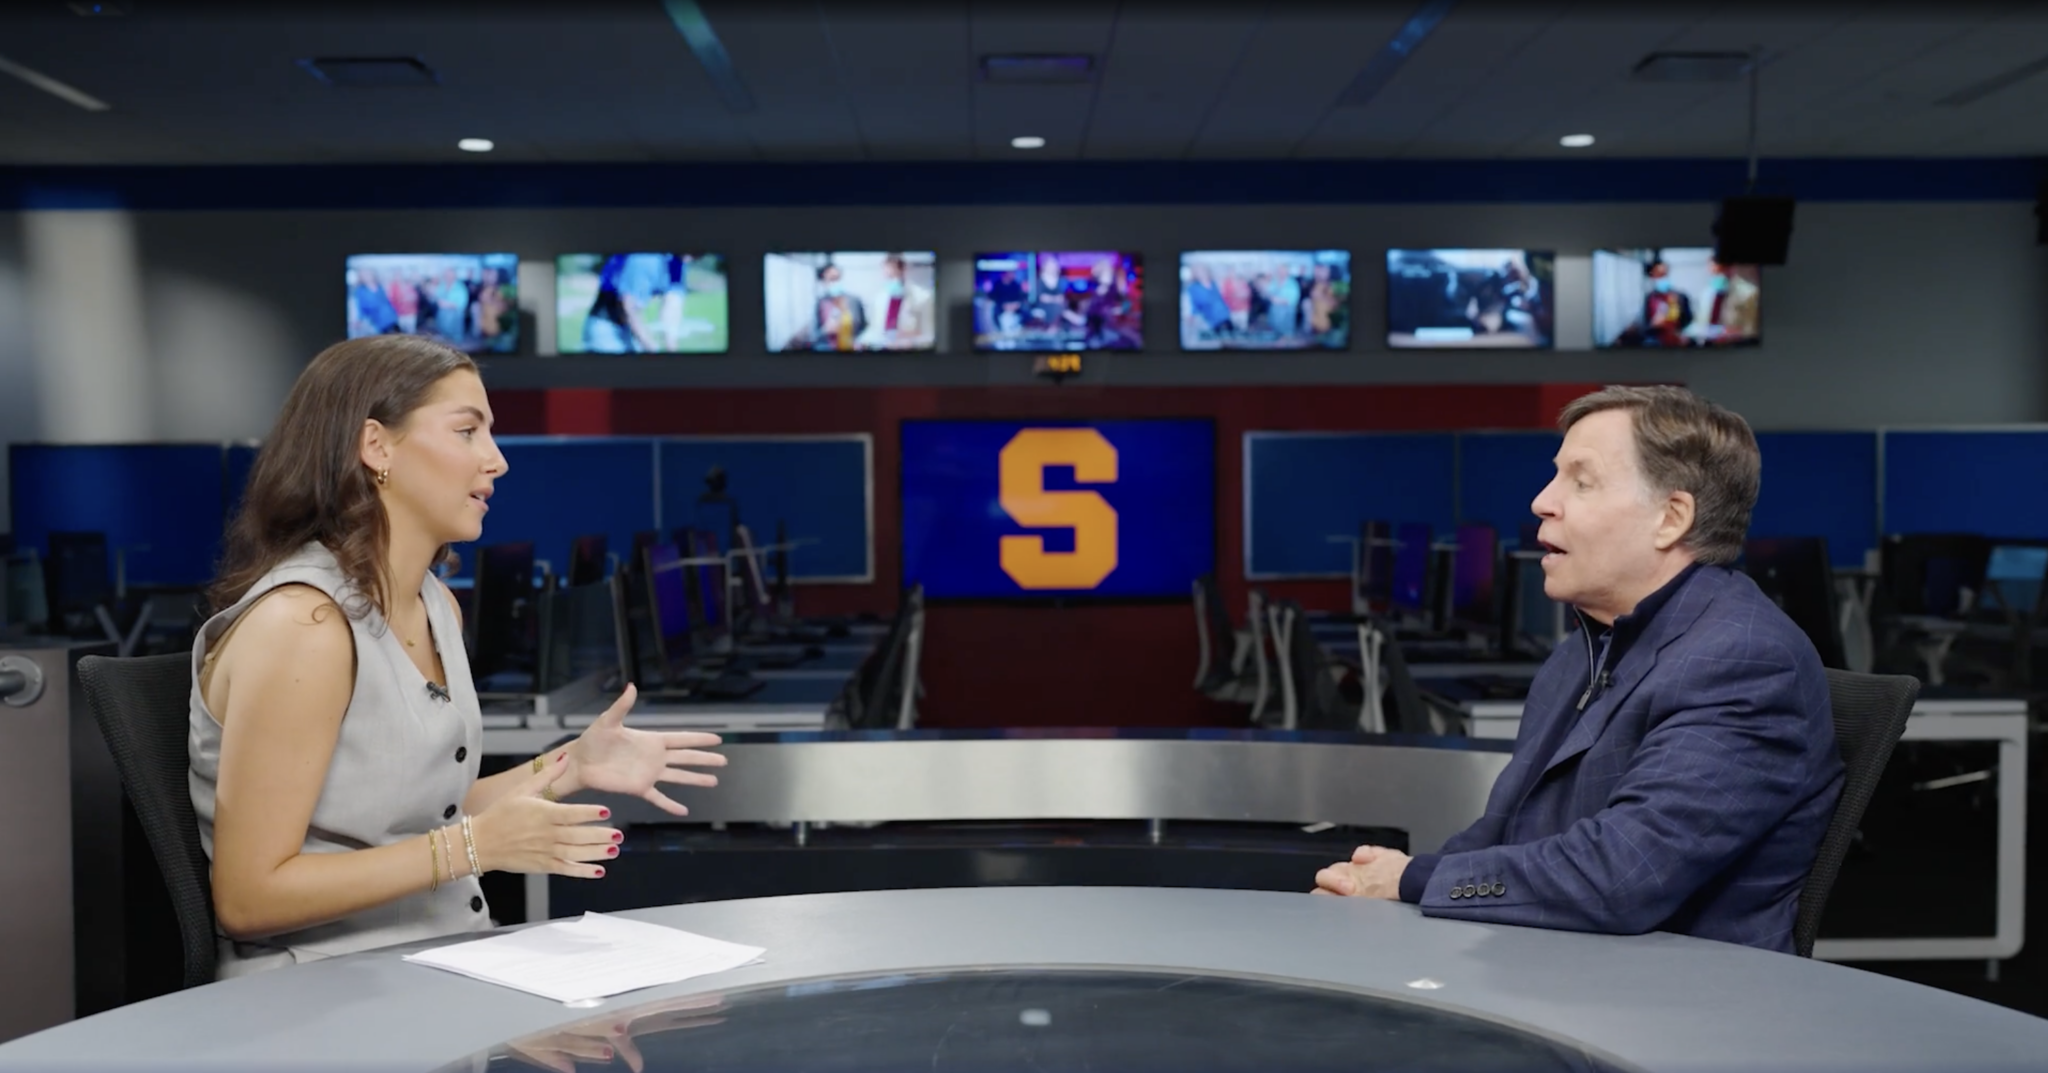 Chloe Smarz interviews Bob Costas in a newsroom